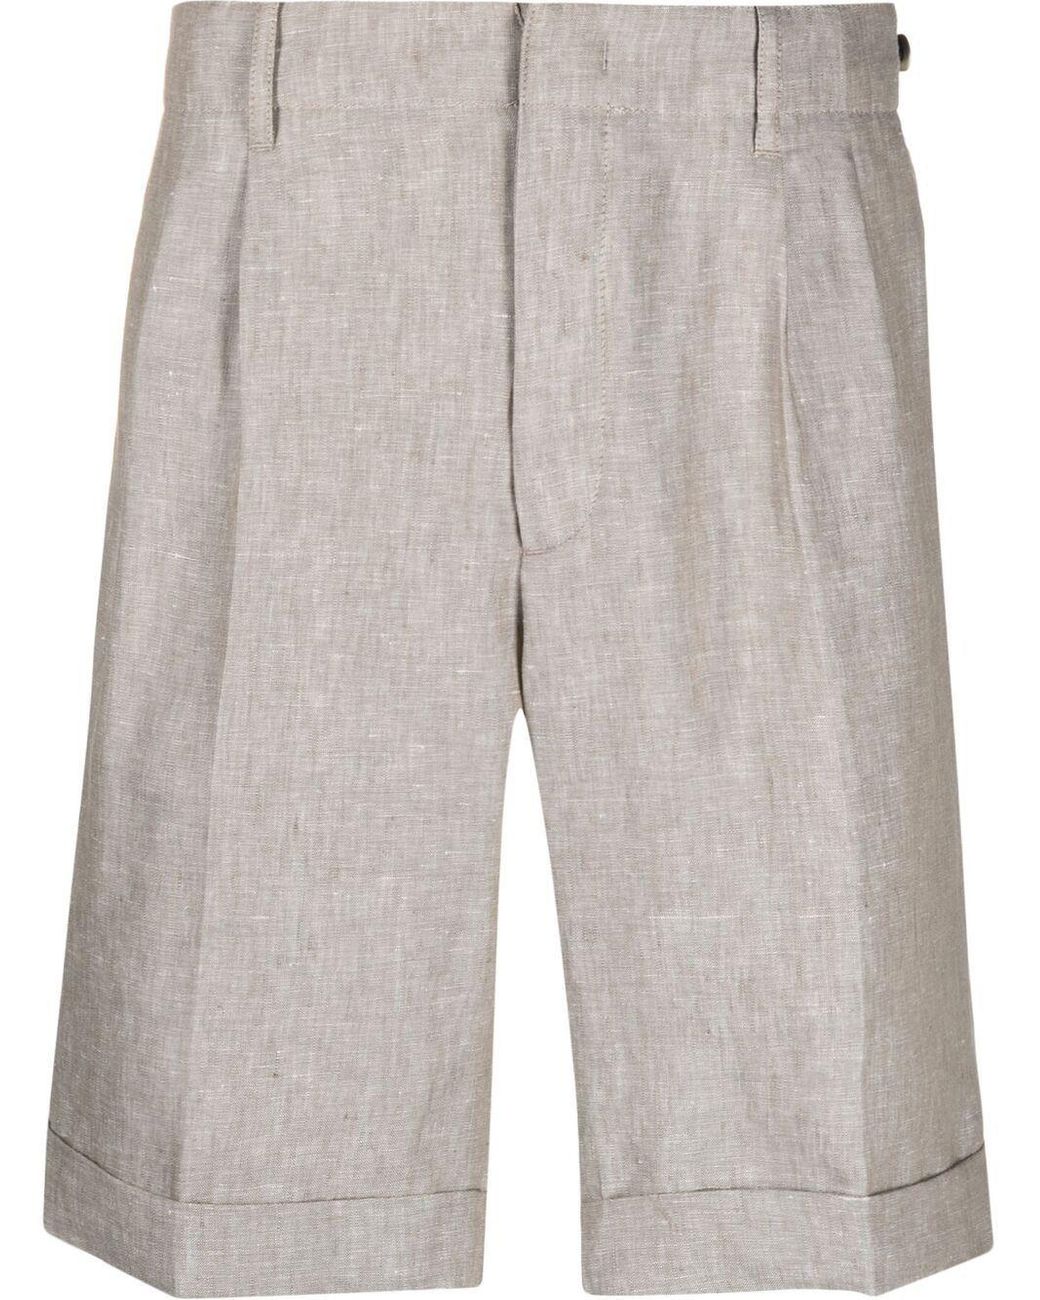 Z Zegna Straight-leg Linen Bermuda Shorts in Gray for Men - Lyst